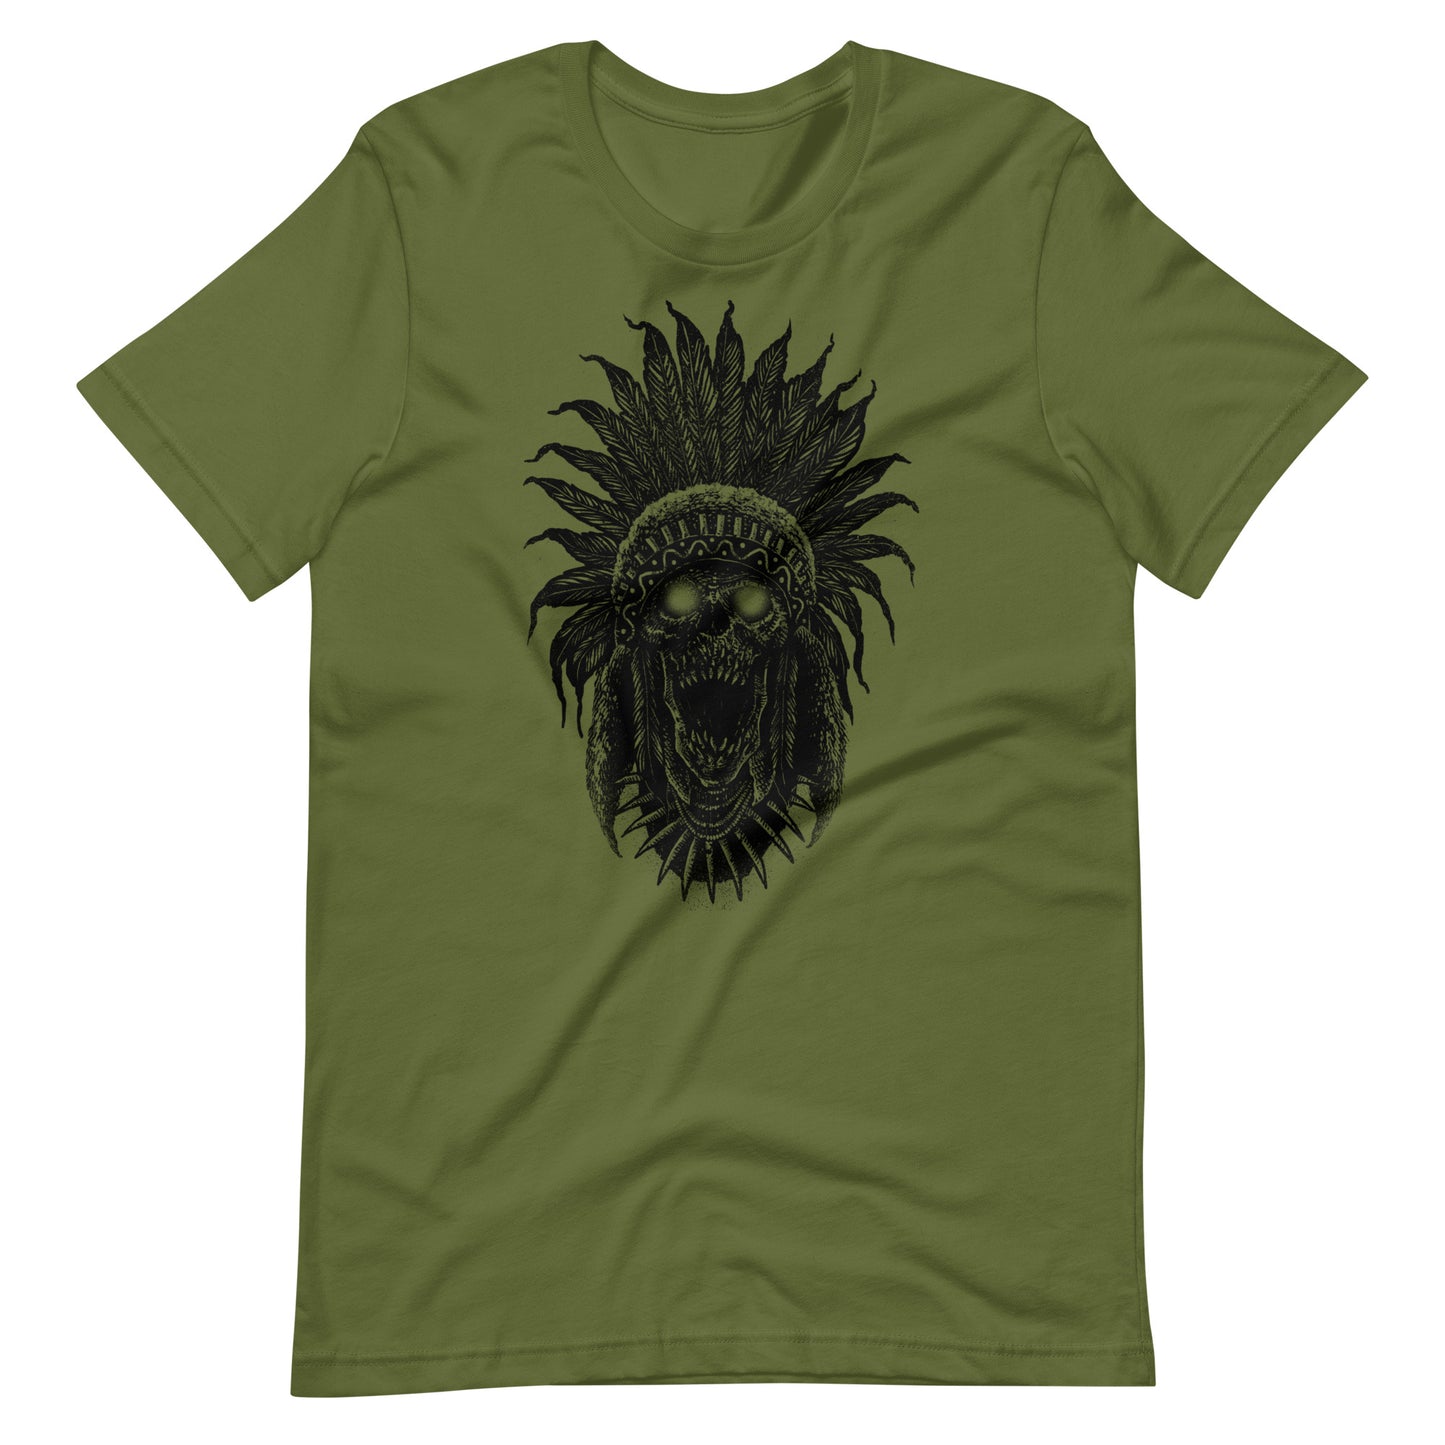 Tribe Skull Black - Men's t-shirt - Olive Front